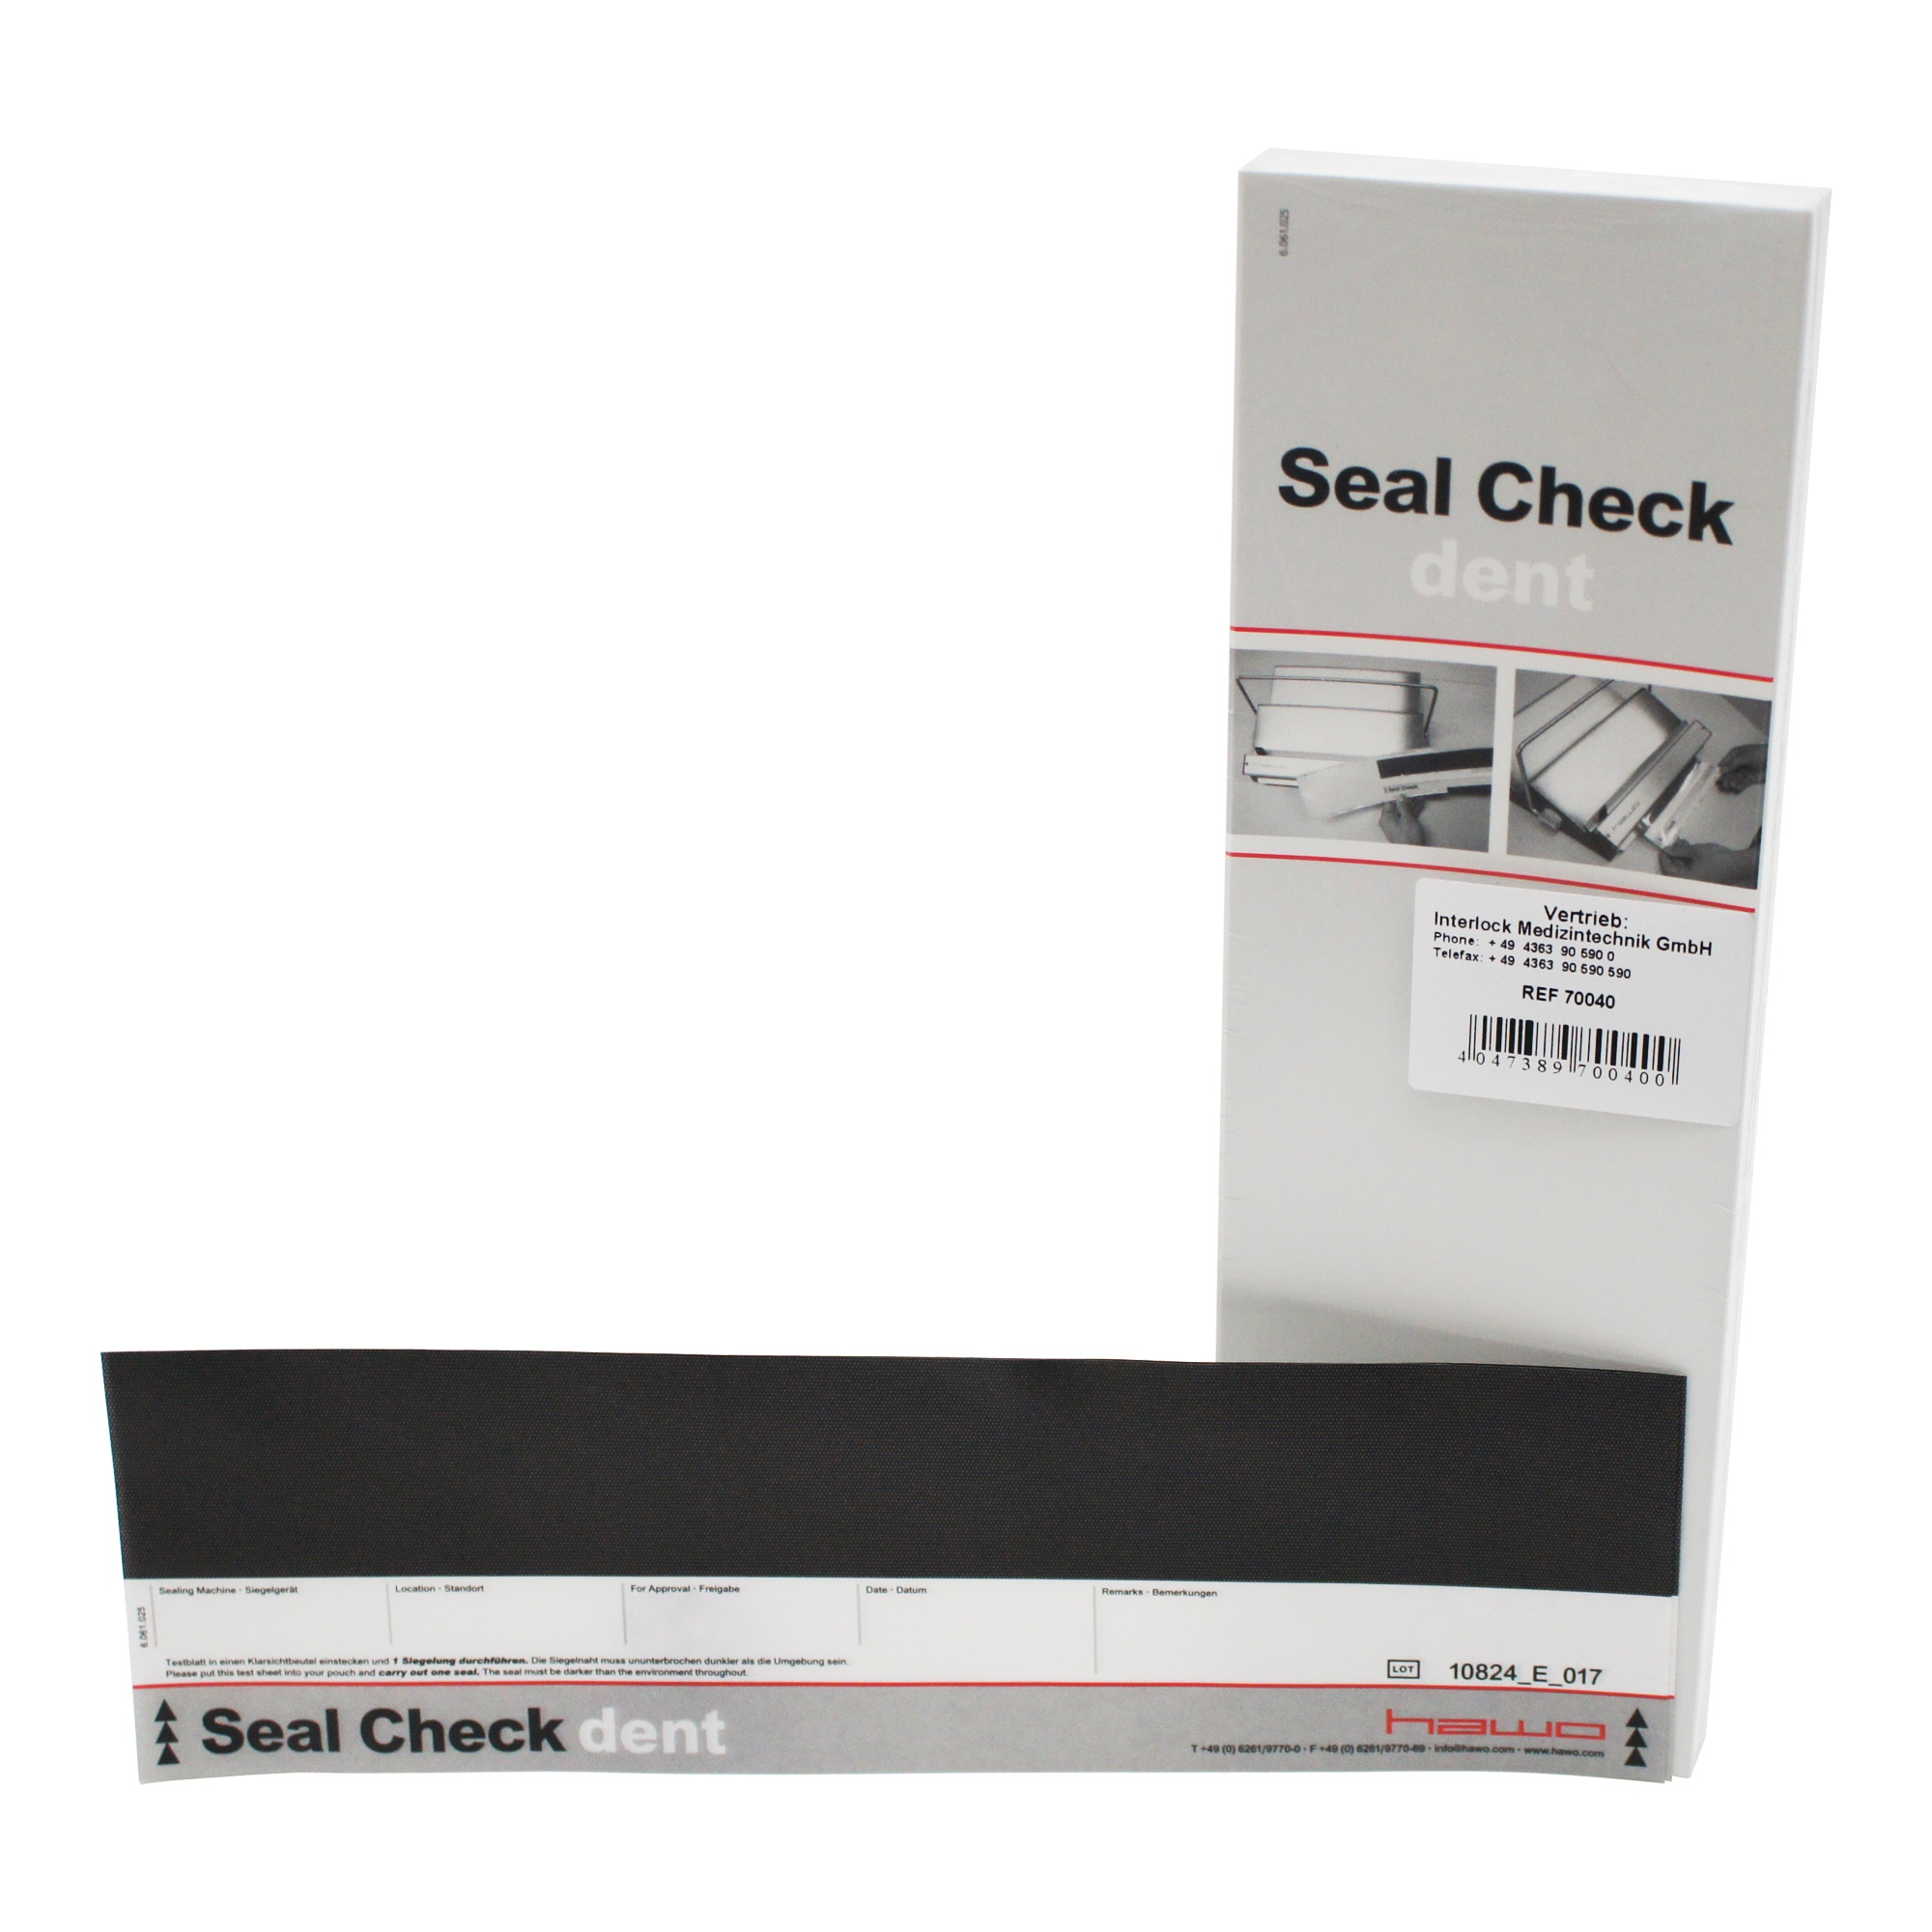 Seal Check dent Image